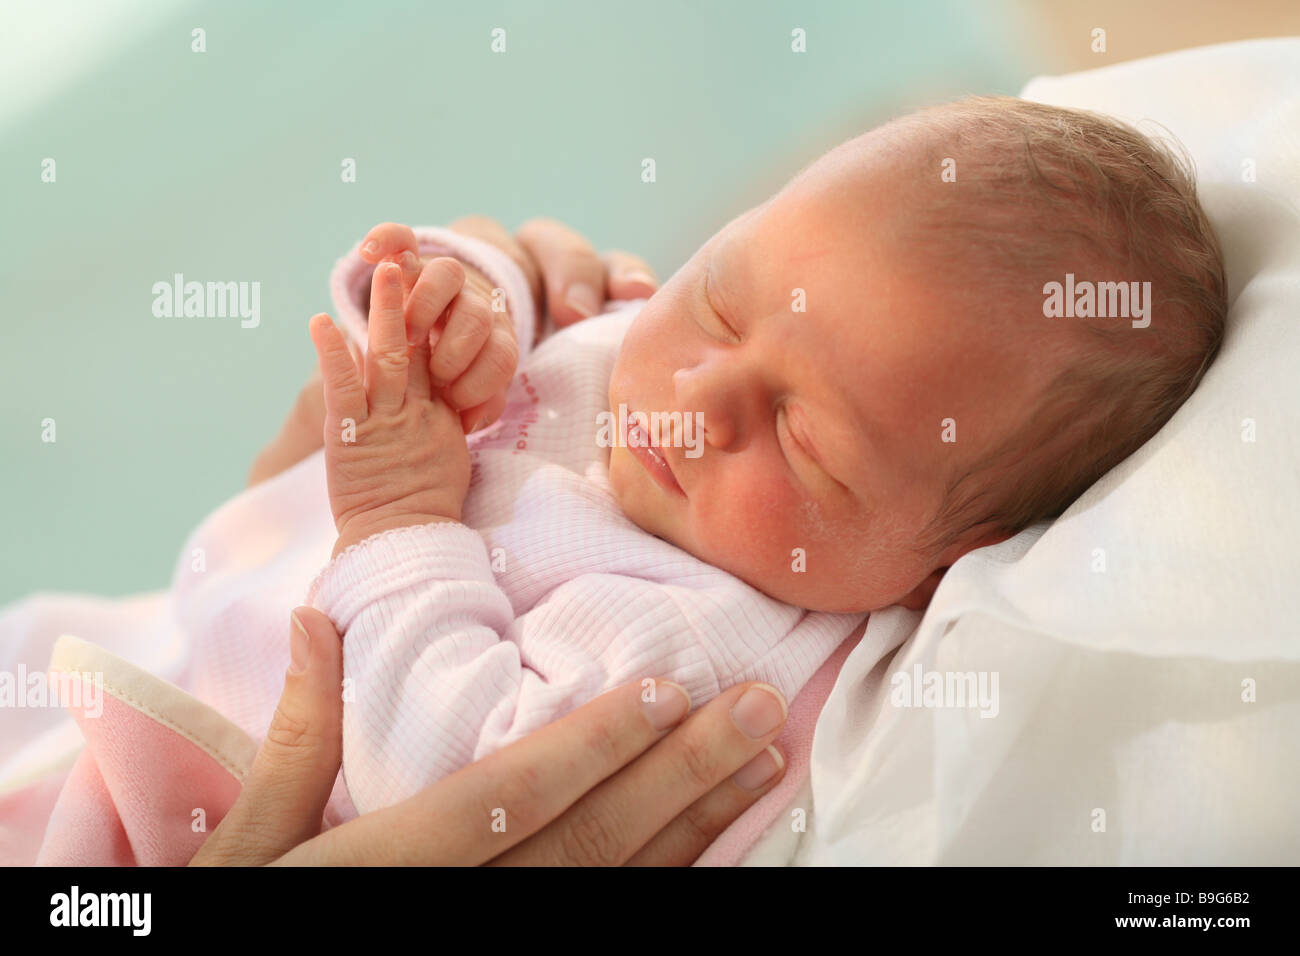 Mamma baby dettaglio 3 settimane 3 settimane vecchio occhi estratto baby baby-mani custodito toccare rapporto dettaglio baby aderenza donna Foto Stock